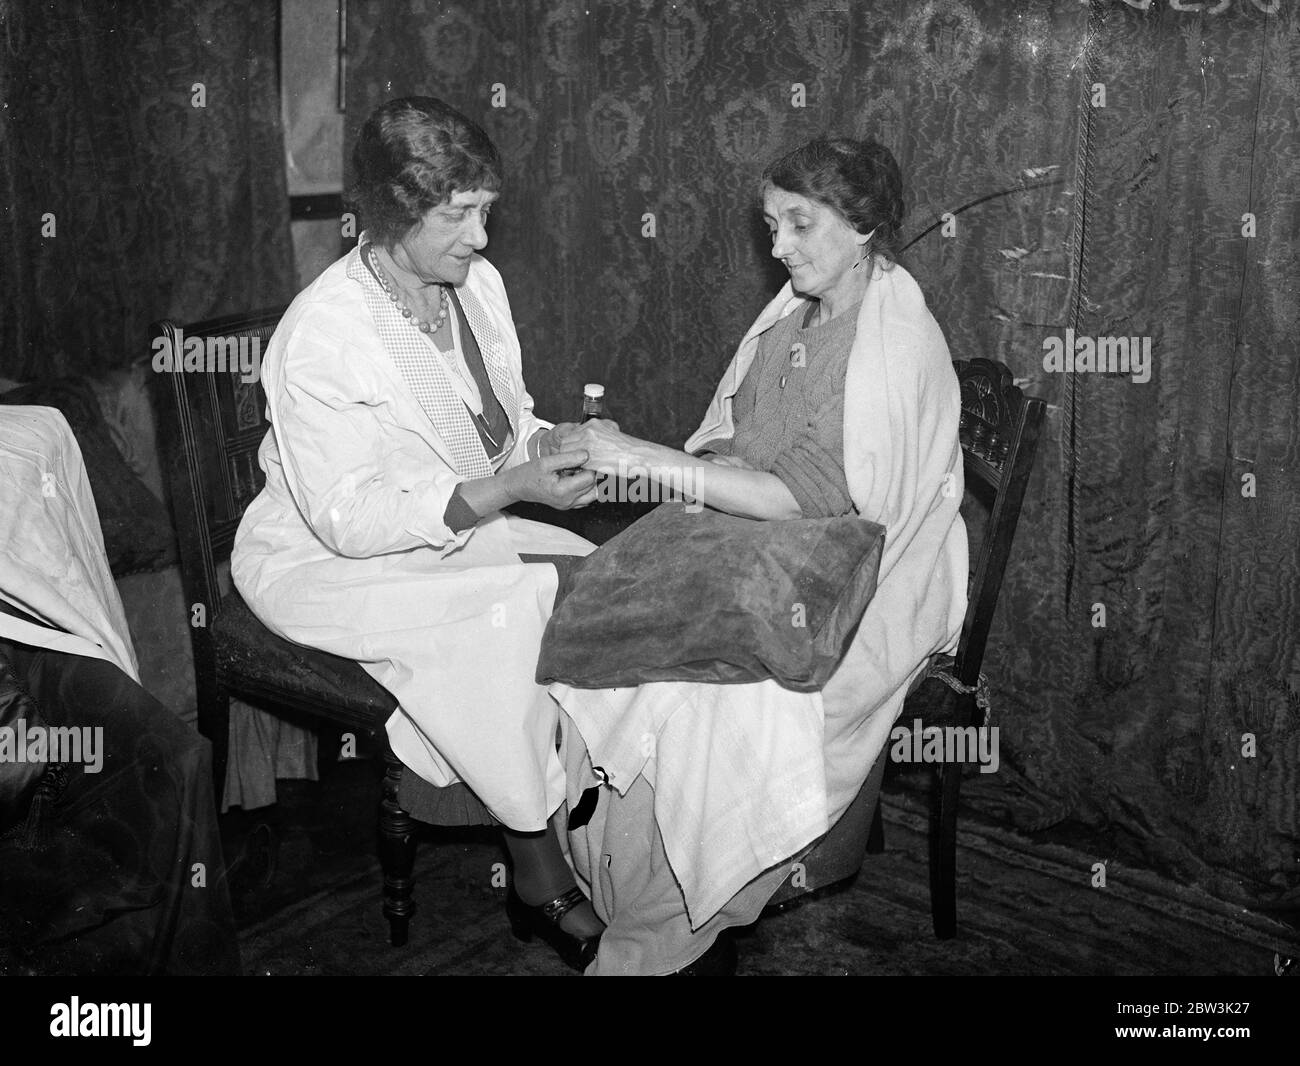 Gertrude, Lady Decies zu helfen Abessinier verwundet. Krankenschwestern nach Äthiopien nehmen . Gertrude, Lady Decies Behandlung einer Frau Patientin in ihrer Klinik in Lower Belgrave Street, London. Januar 1936 Stockfoto